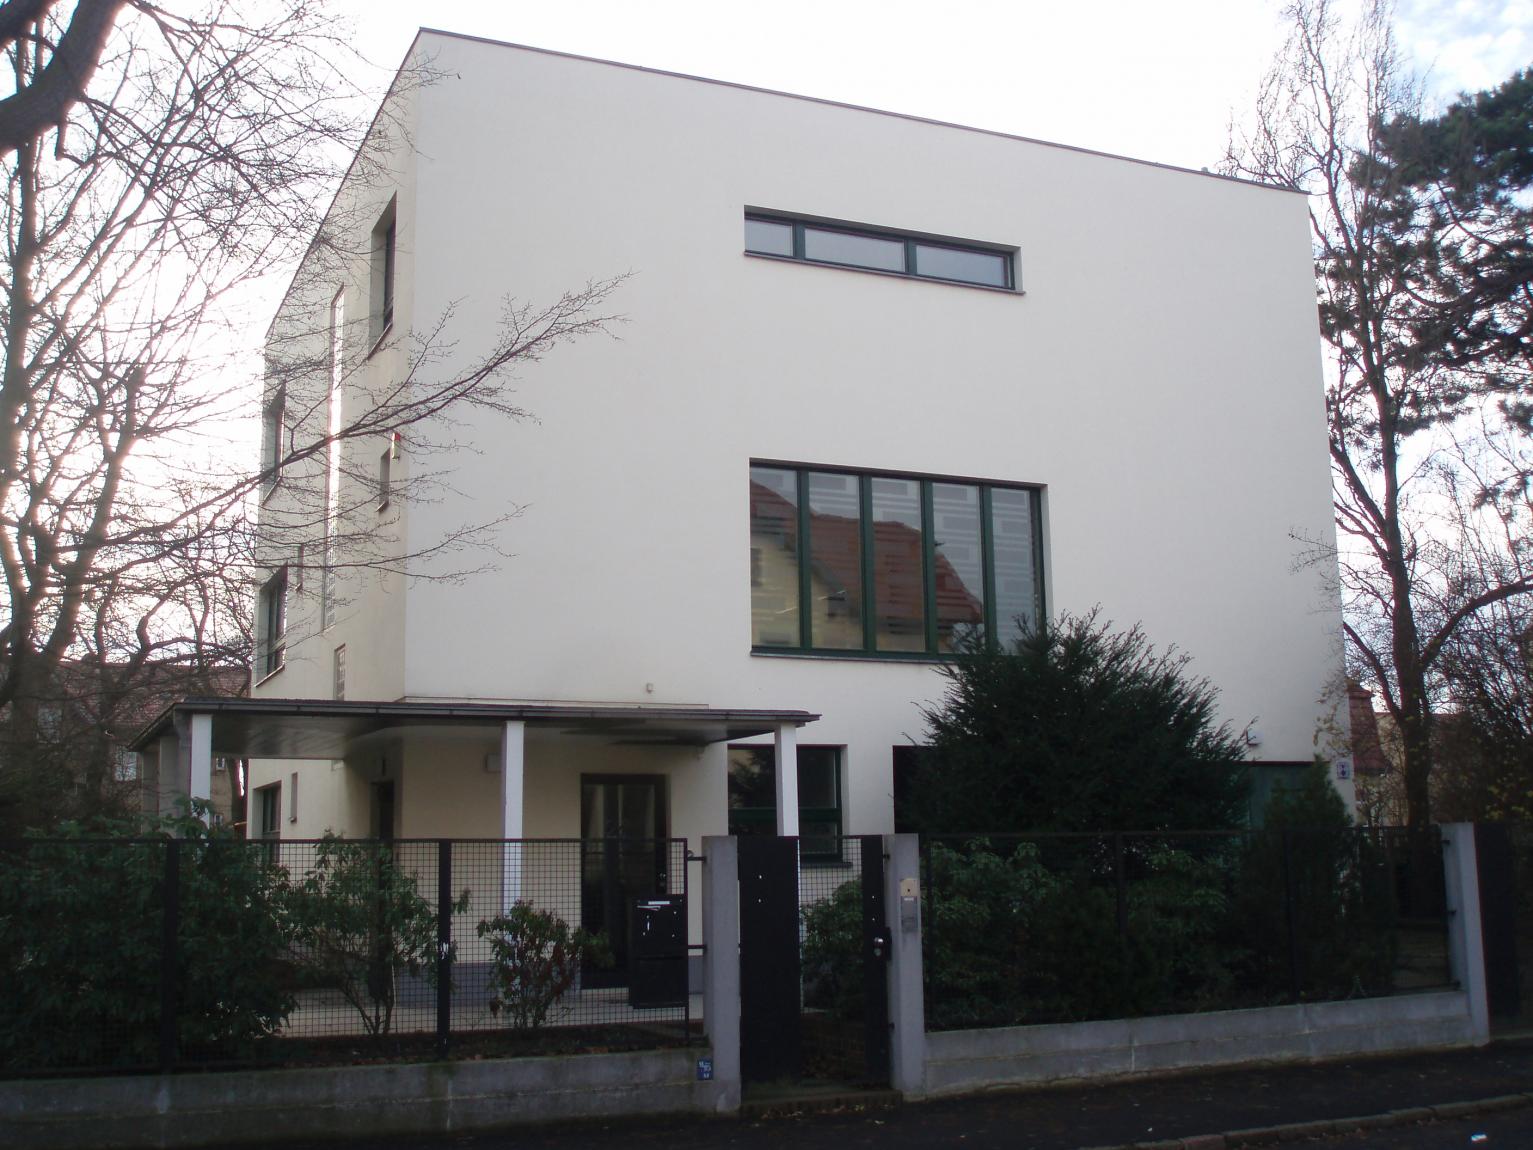 Architekt Adolf Rading "Haus Rabe" im Bauhaus-Stil von 1930, Zwenkau